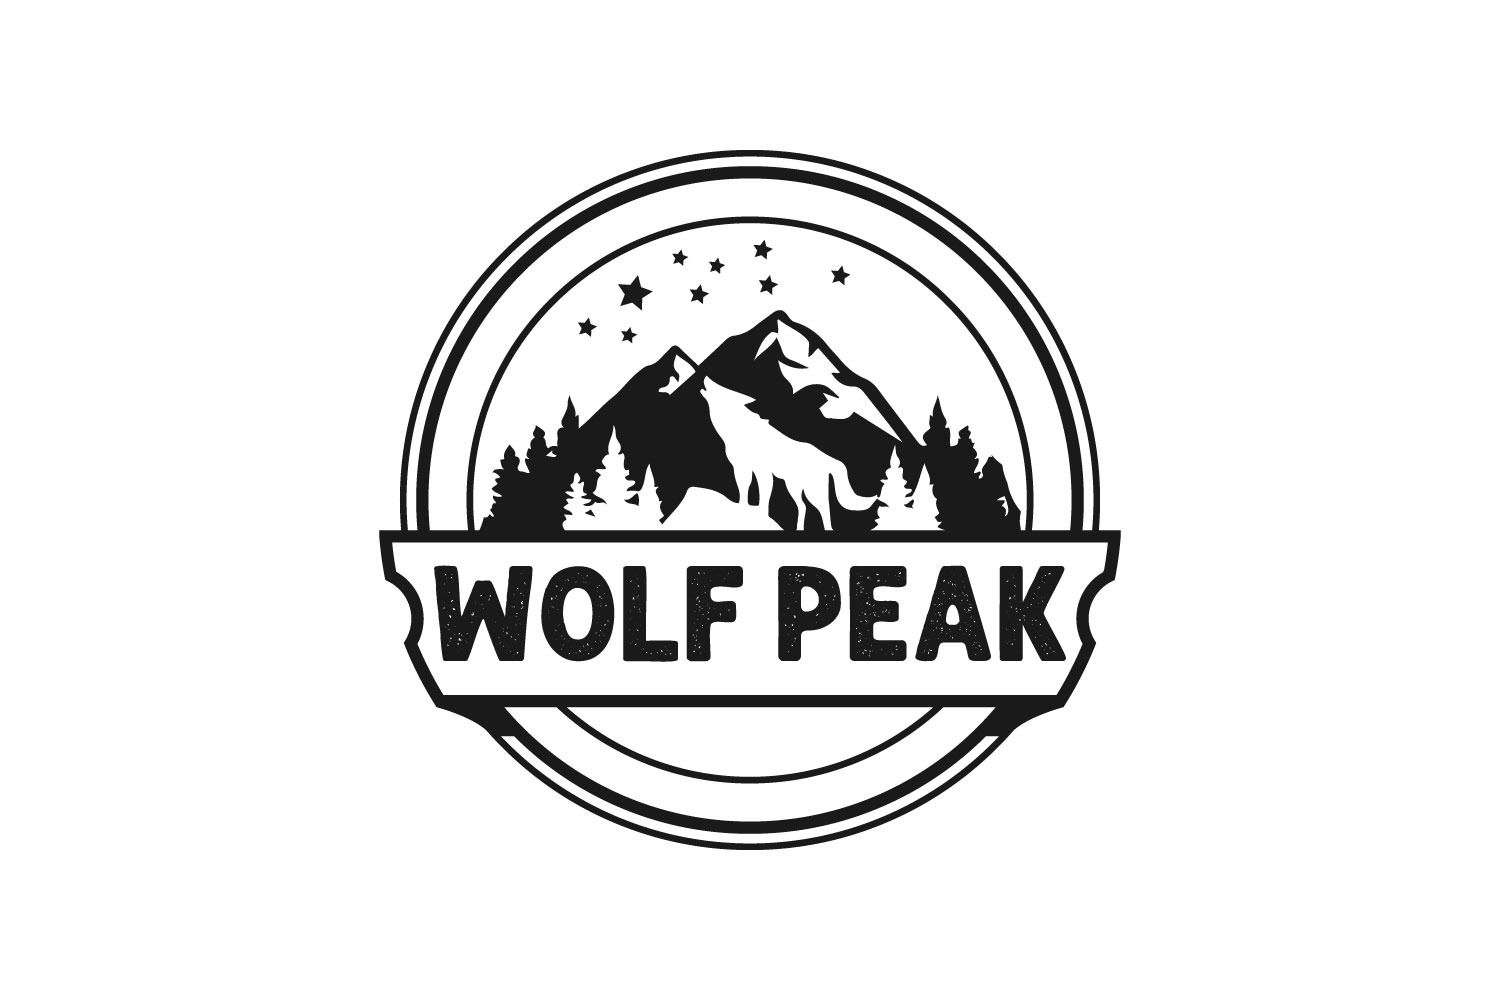 Cool retro mountain logo ideas free